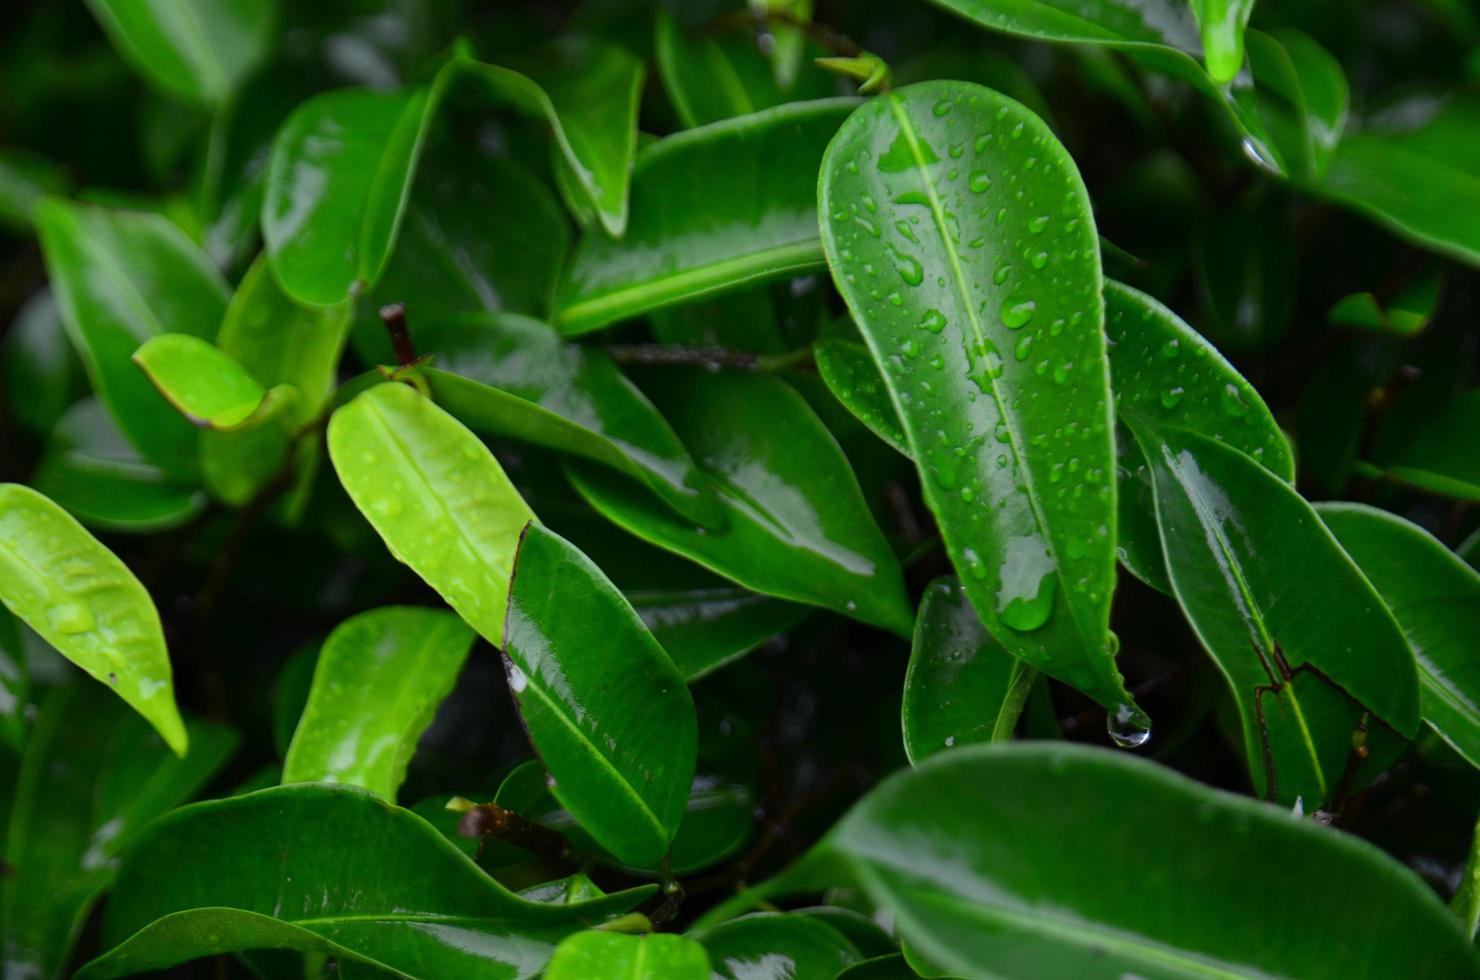 grüne Blätter Hintergrundtexturen mit Wassereffekt foto